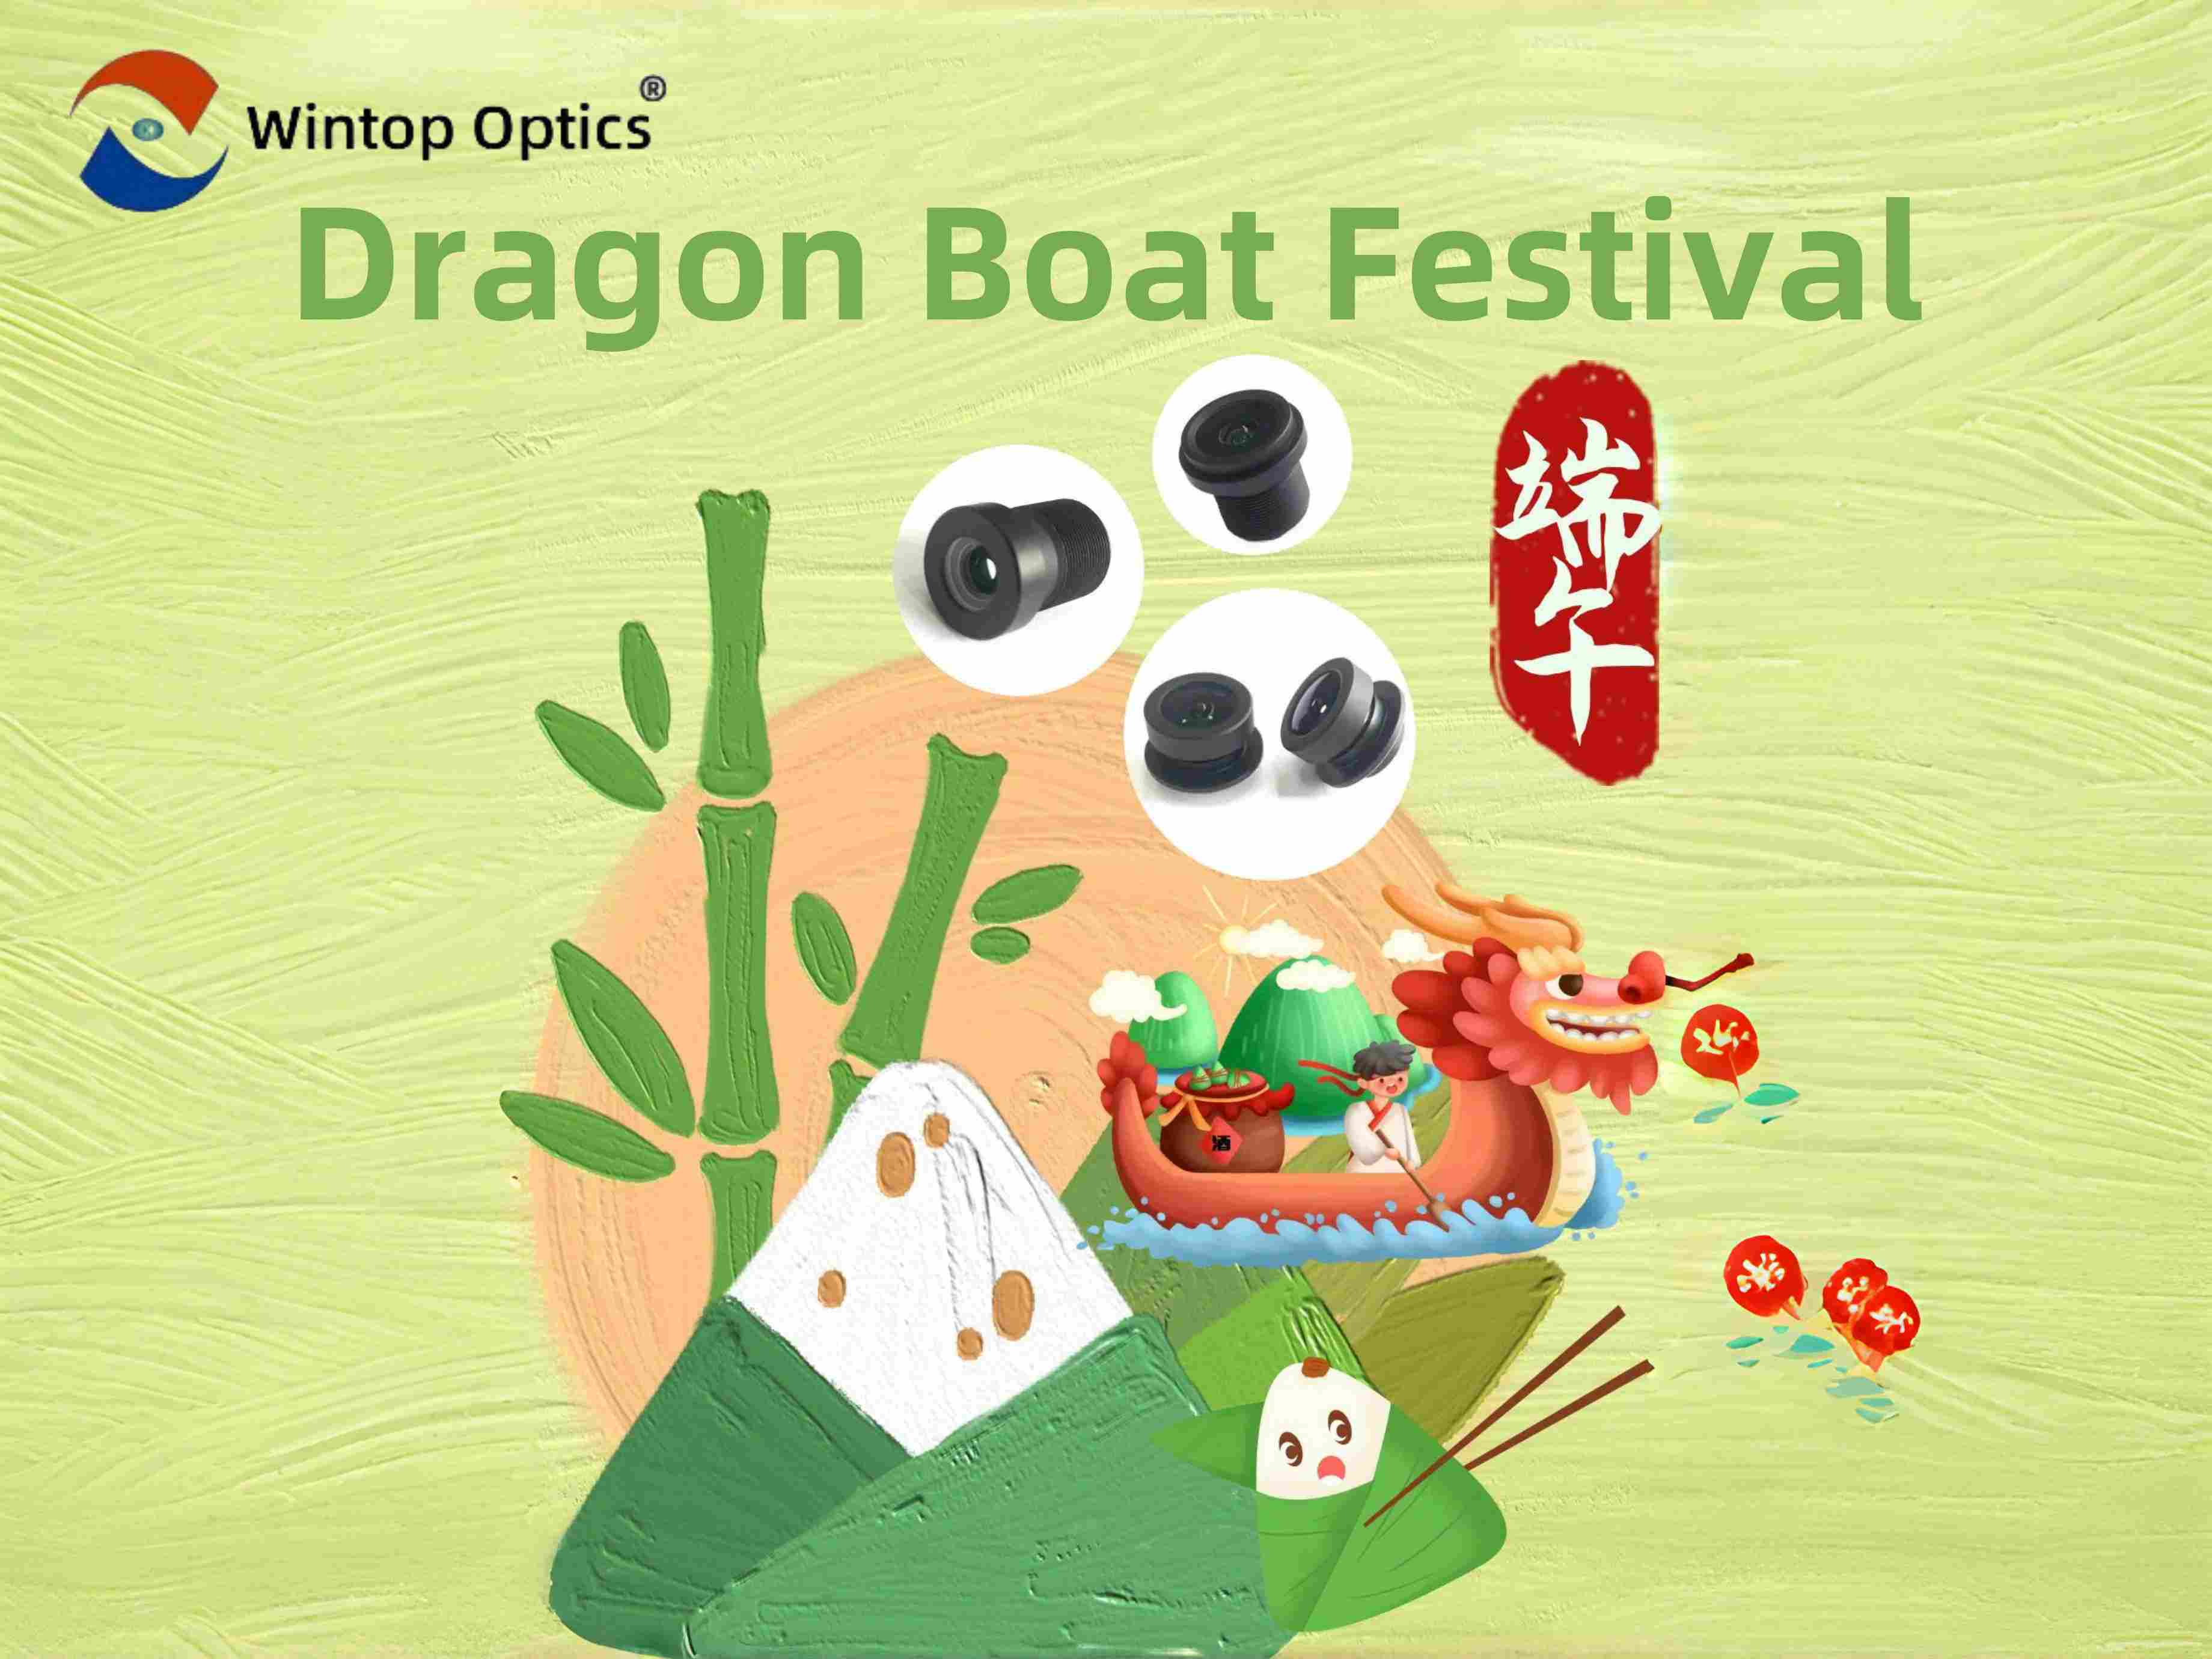 L'innovazione incontra la tradizione: il tributo di Wintop Optics al Dragon Boat Festival